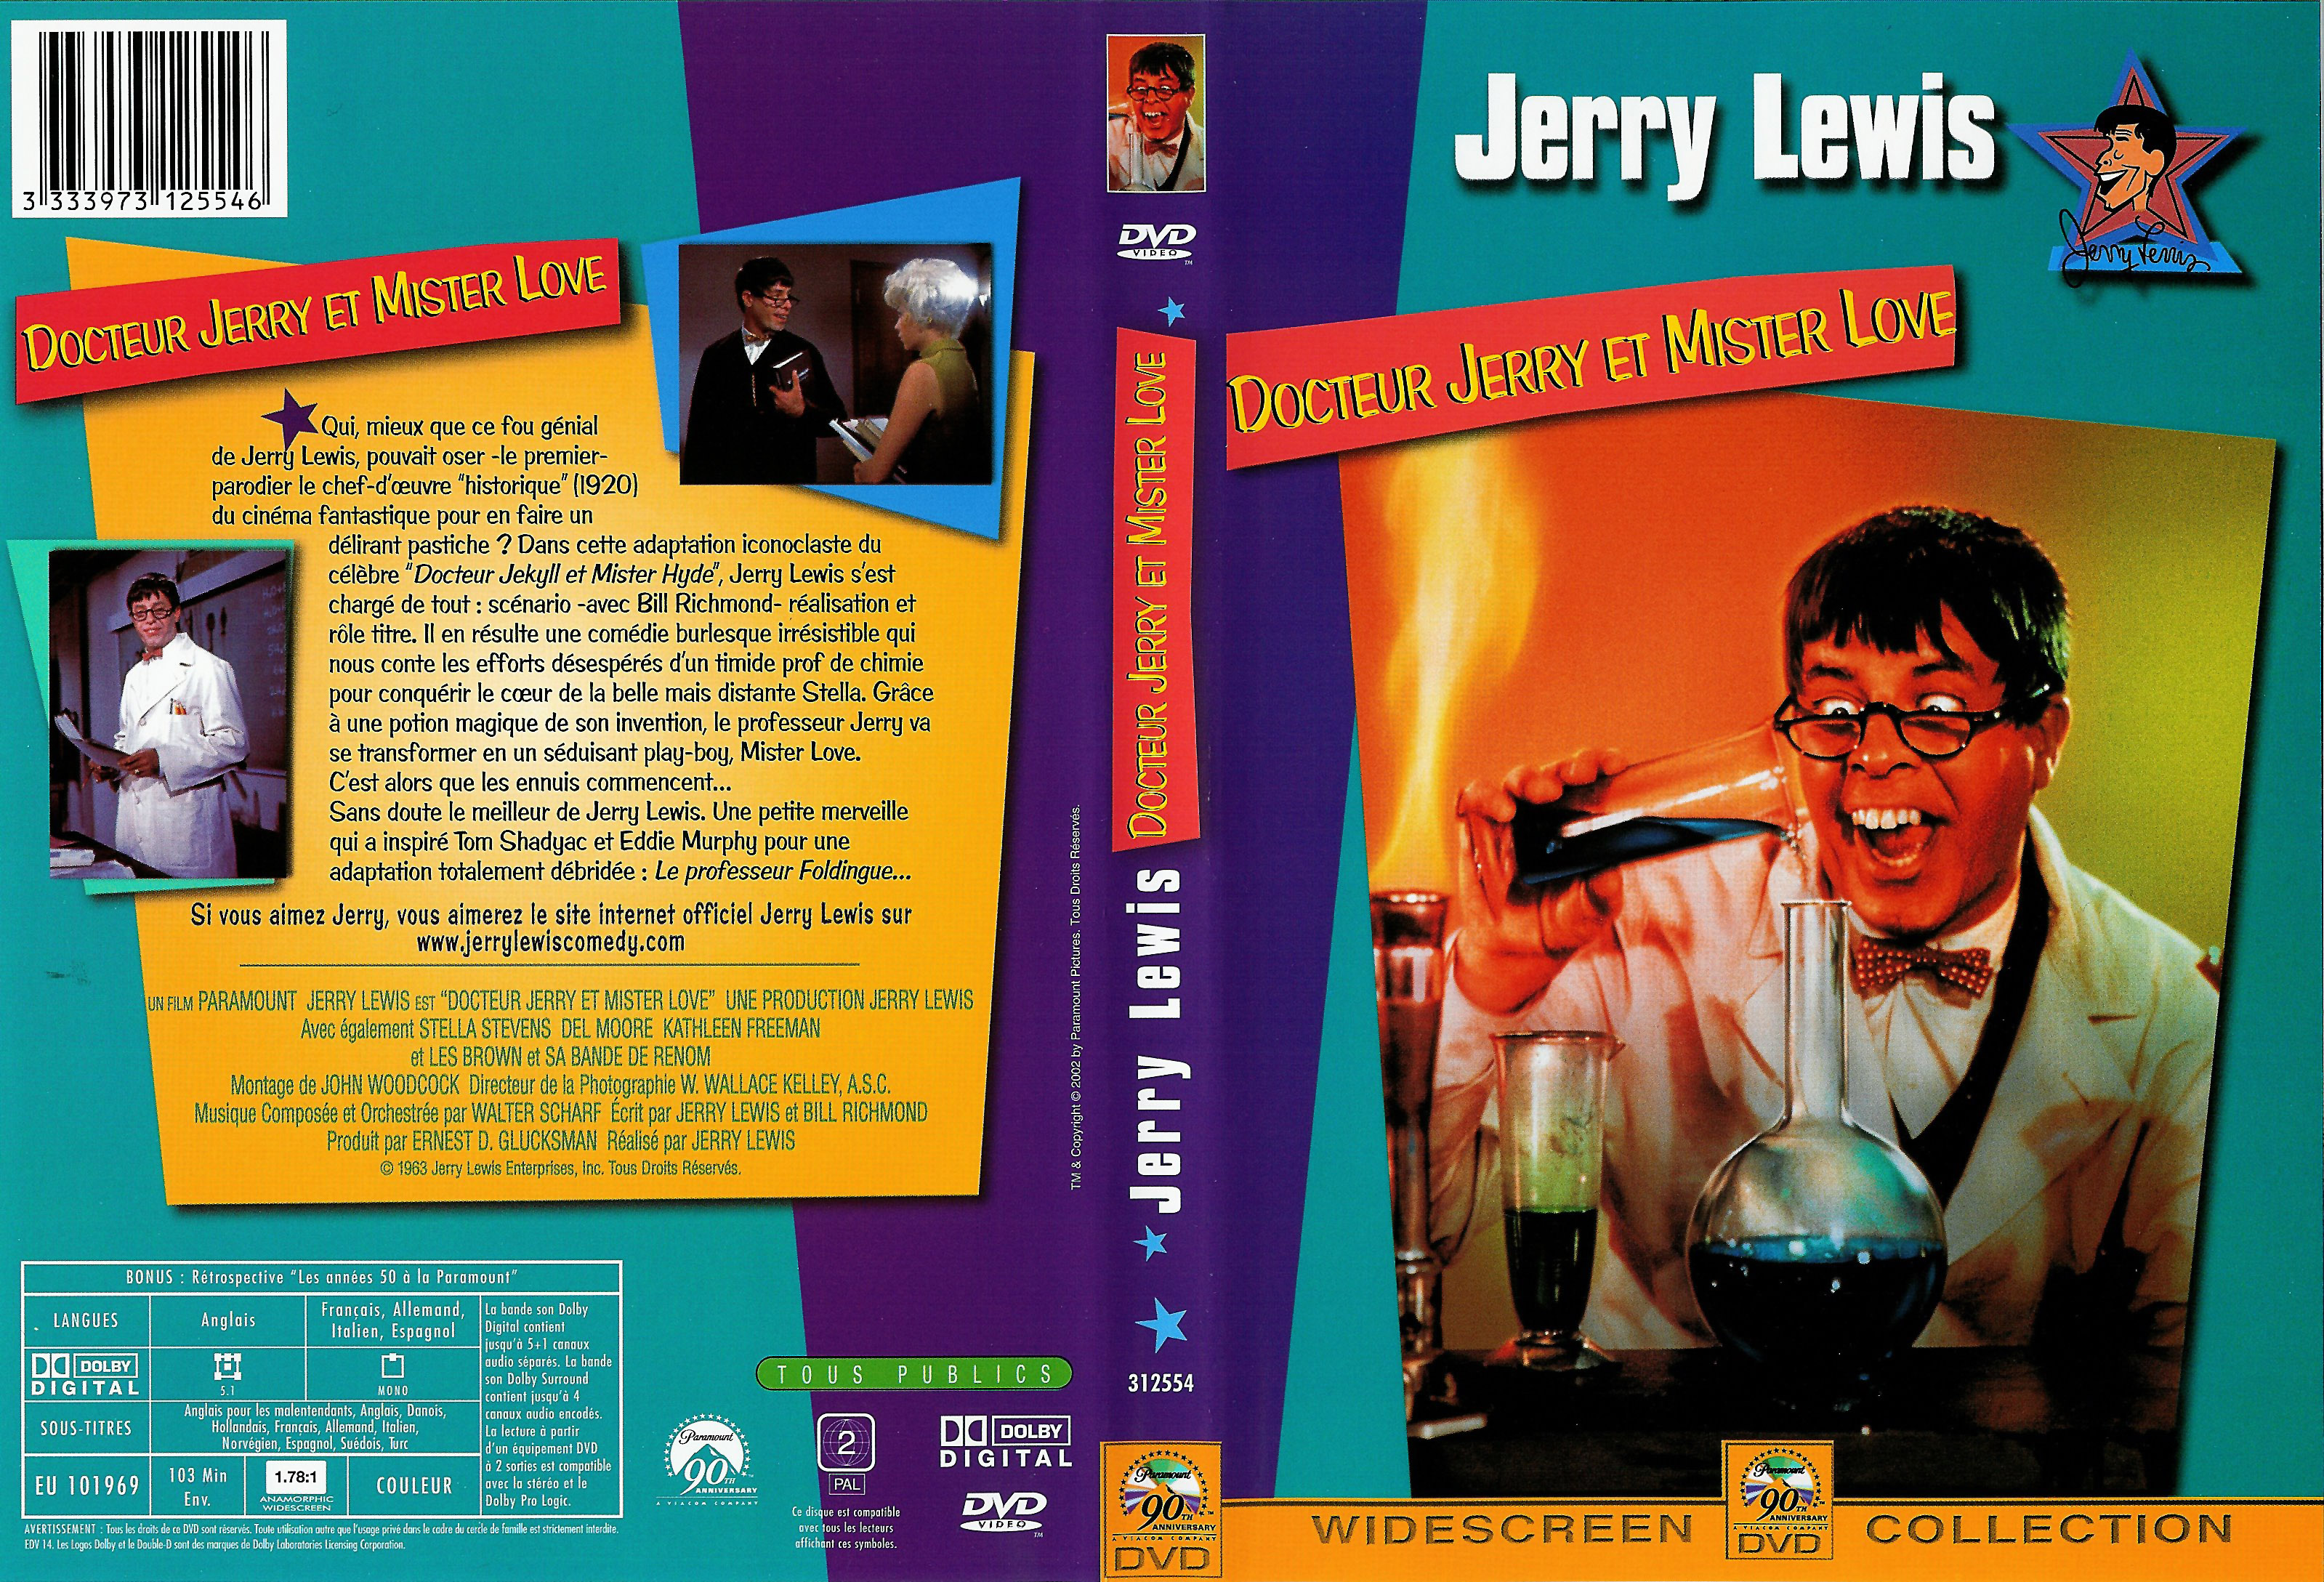 Jaquette DVD Docteur Jerry et Mister love